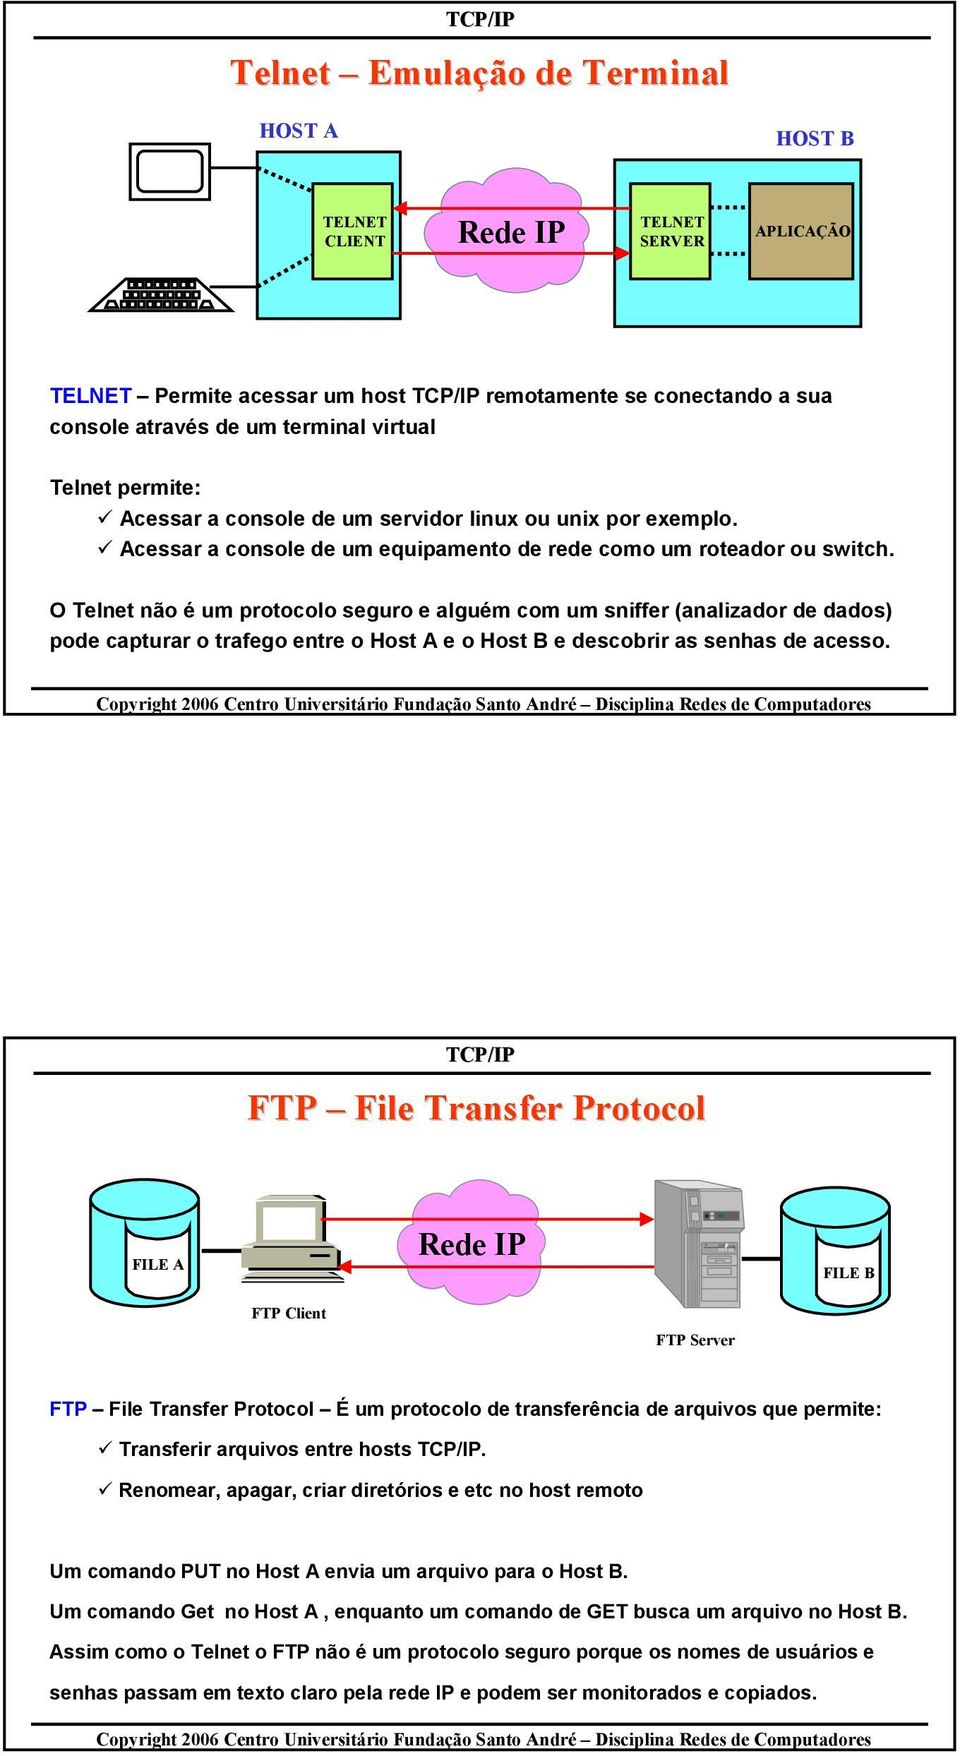 O Telnet não é um protocolo seguro e alguém com um sniffer (analizador de dados) pode capturar o trafego entre o Host A e o Host B e descobrir as senhas de acesso.